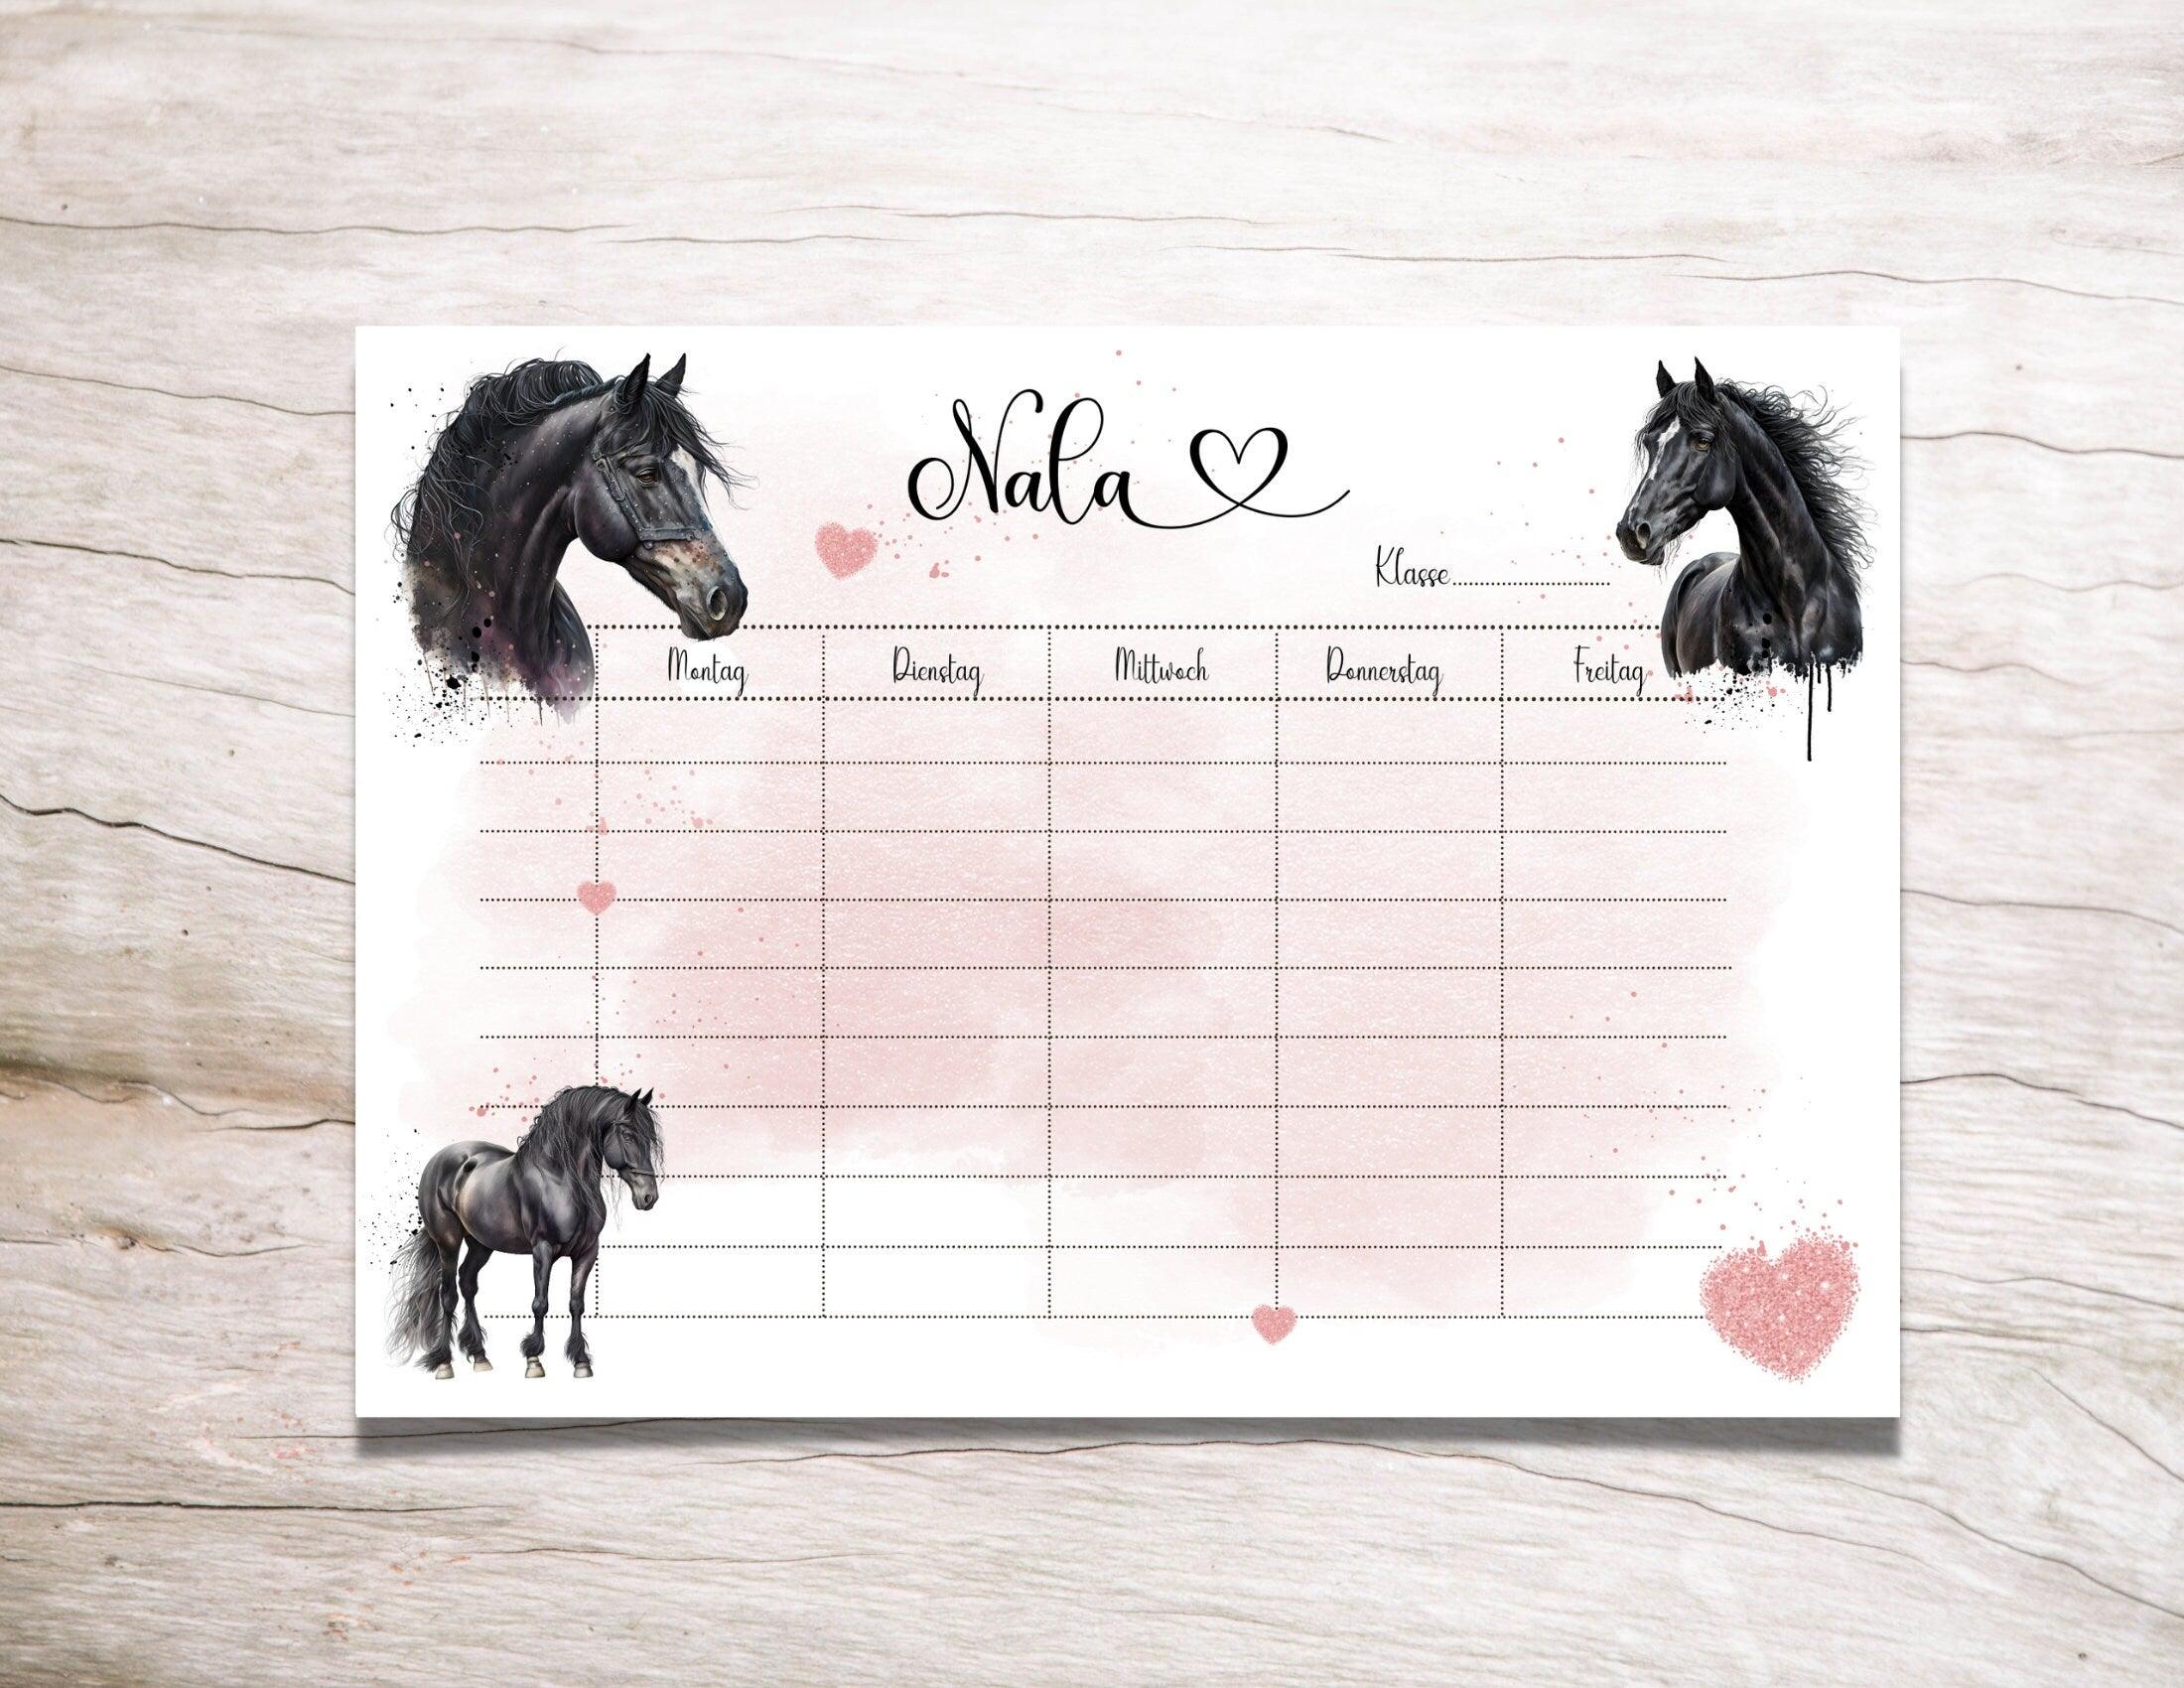 Personalisierter Stundenplan | schwarze Pferde | rosa Glitzer Herz | magnetisch und abwischbar | nachhaltig | auch zum Download - Roo's Gift Shop